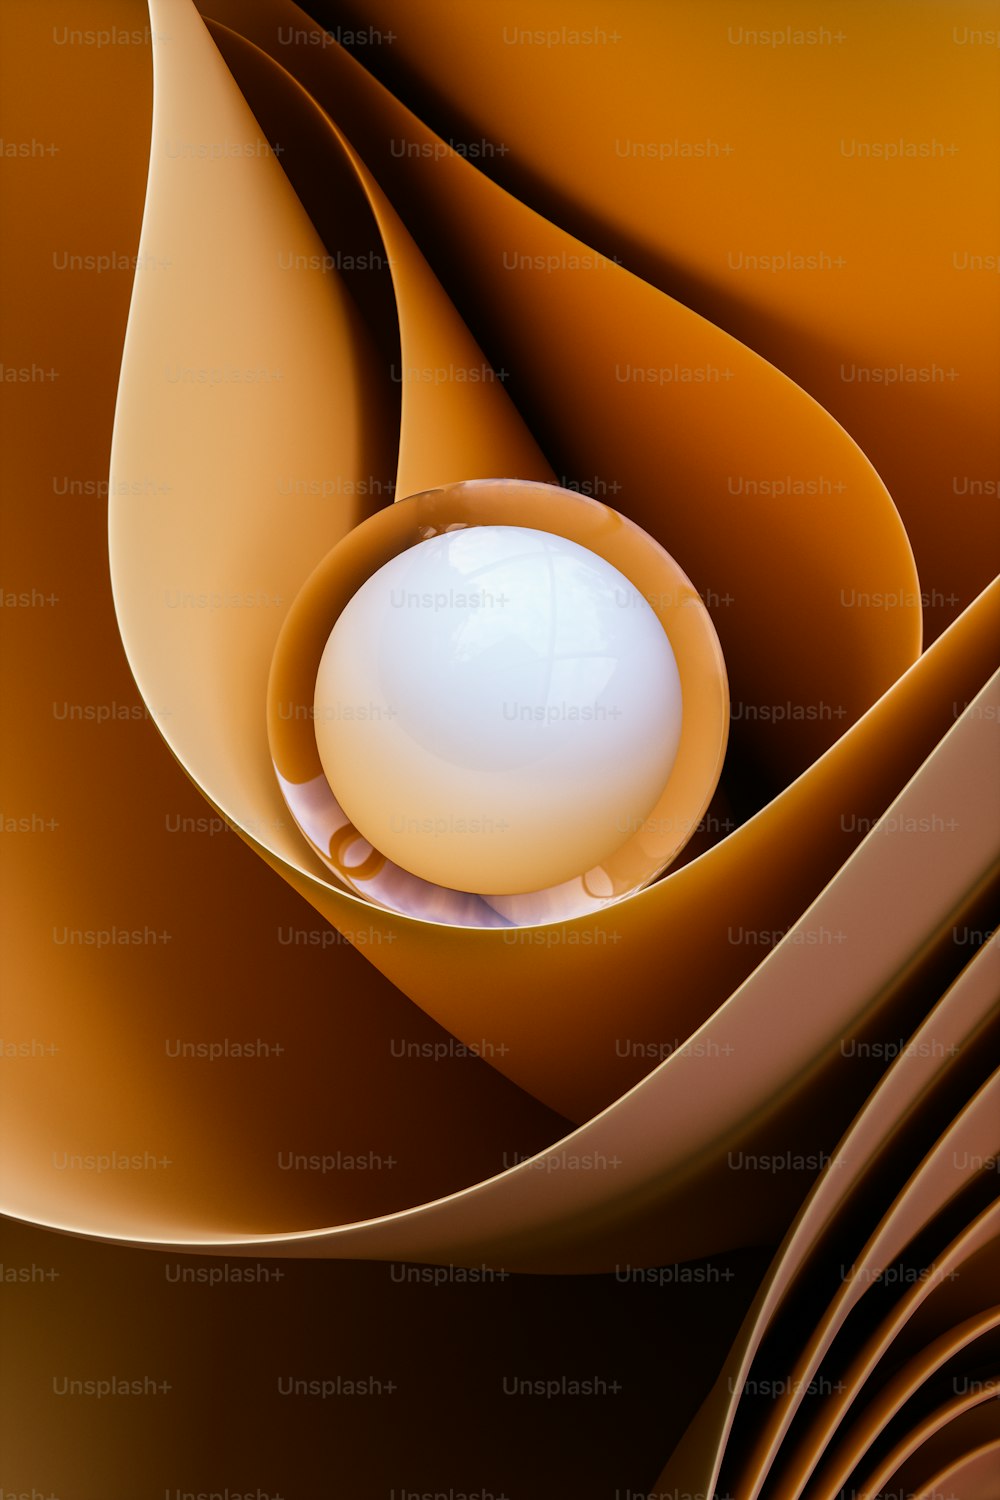 Una imagen generada por computadora de una esfera en el centro de un remolino